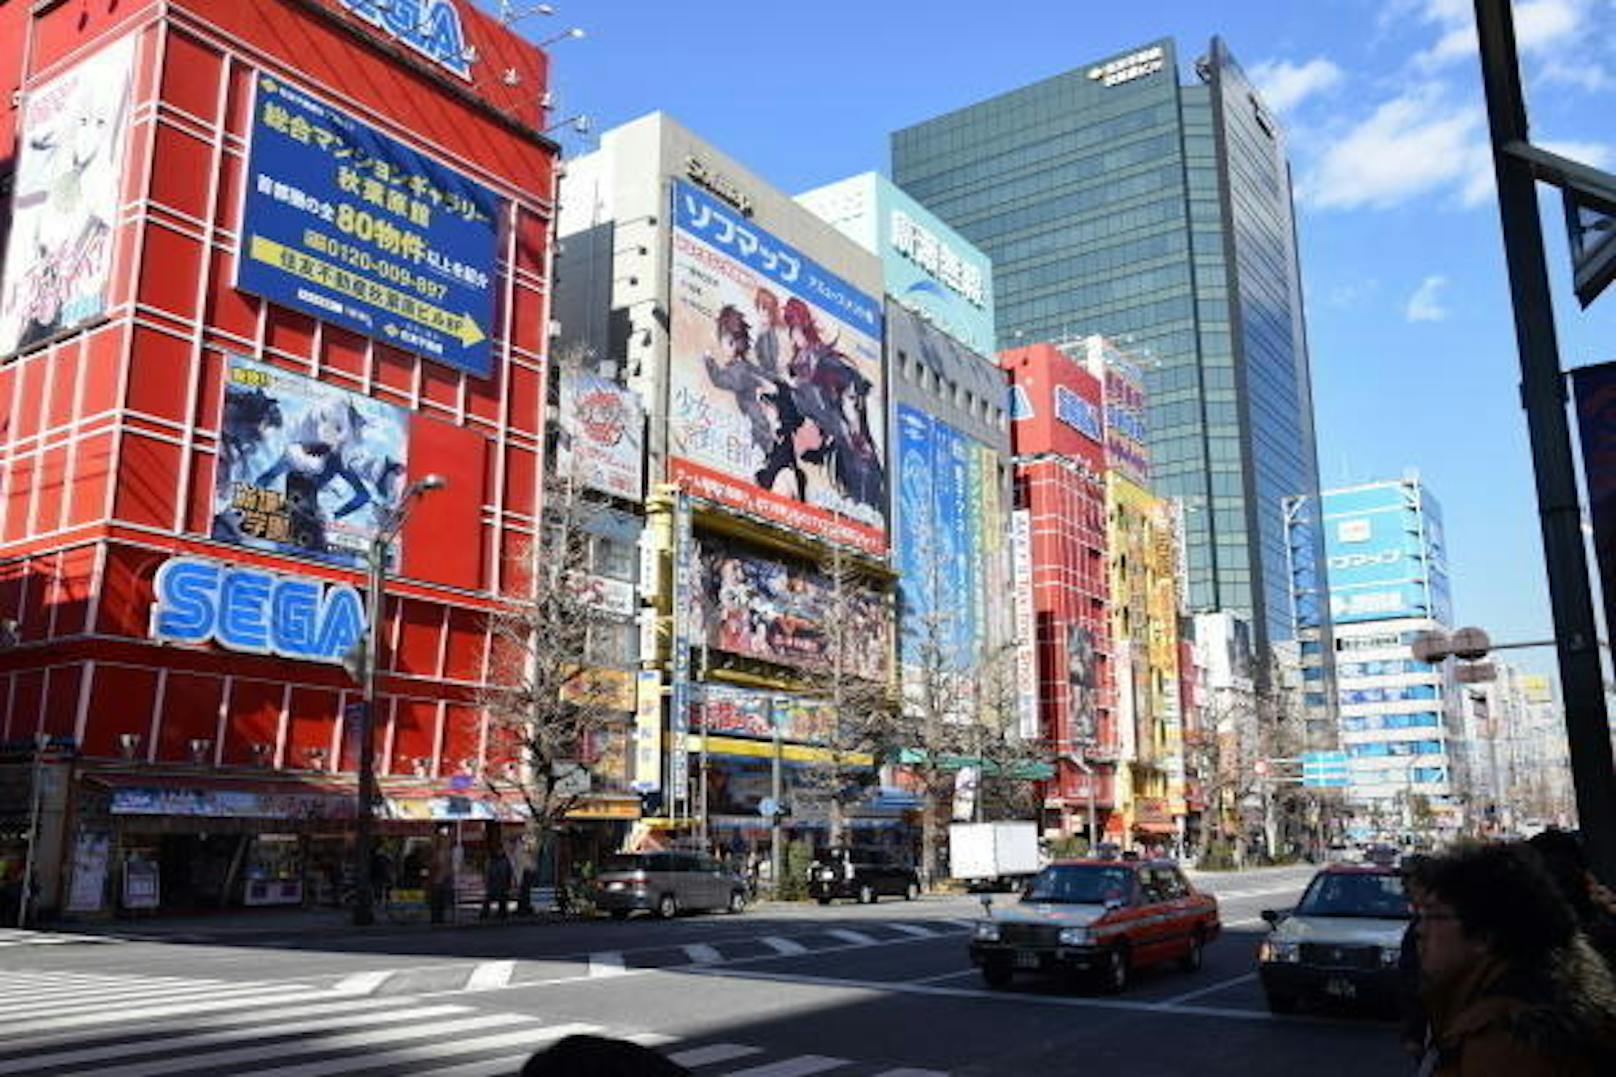 <b>Tokio, Japan</b>: Im Viertel Akihabara treffen sich die Otakus, die japanische Bezeichnung für Nerds. Jeder zweite Laden hier führt entweder Mangas, Spielzeuge oder Videogames. Wer eine originale Nintendo-Konsole aus Japan wie die Famicom sucht, wird hier fündig.